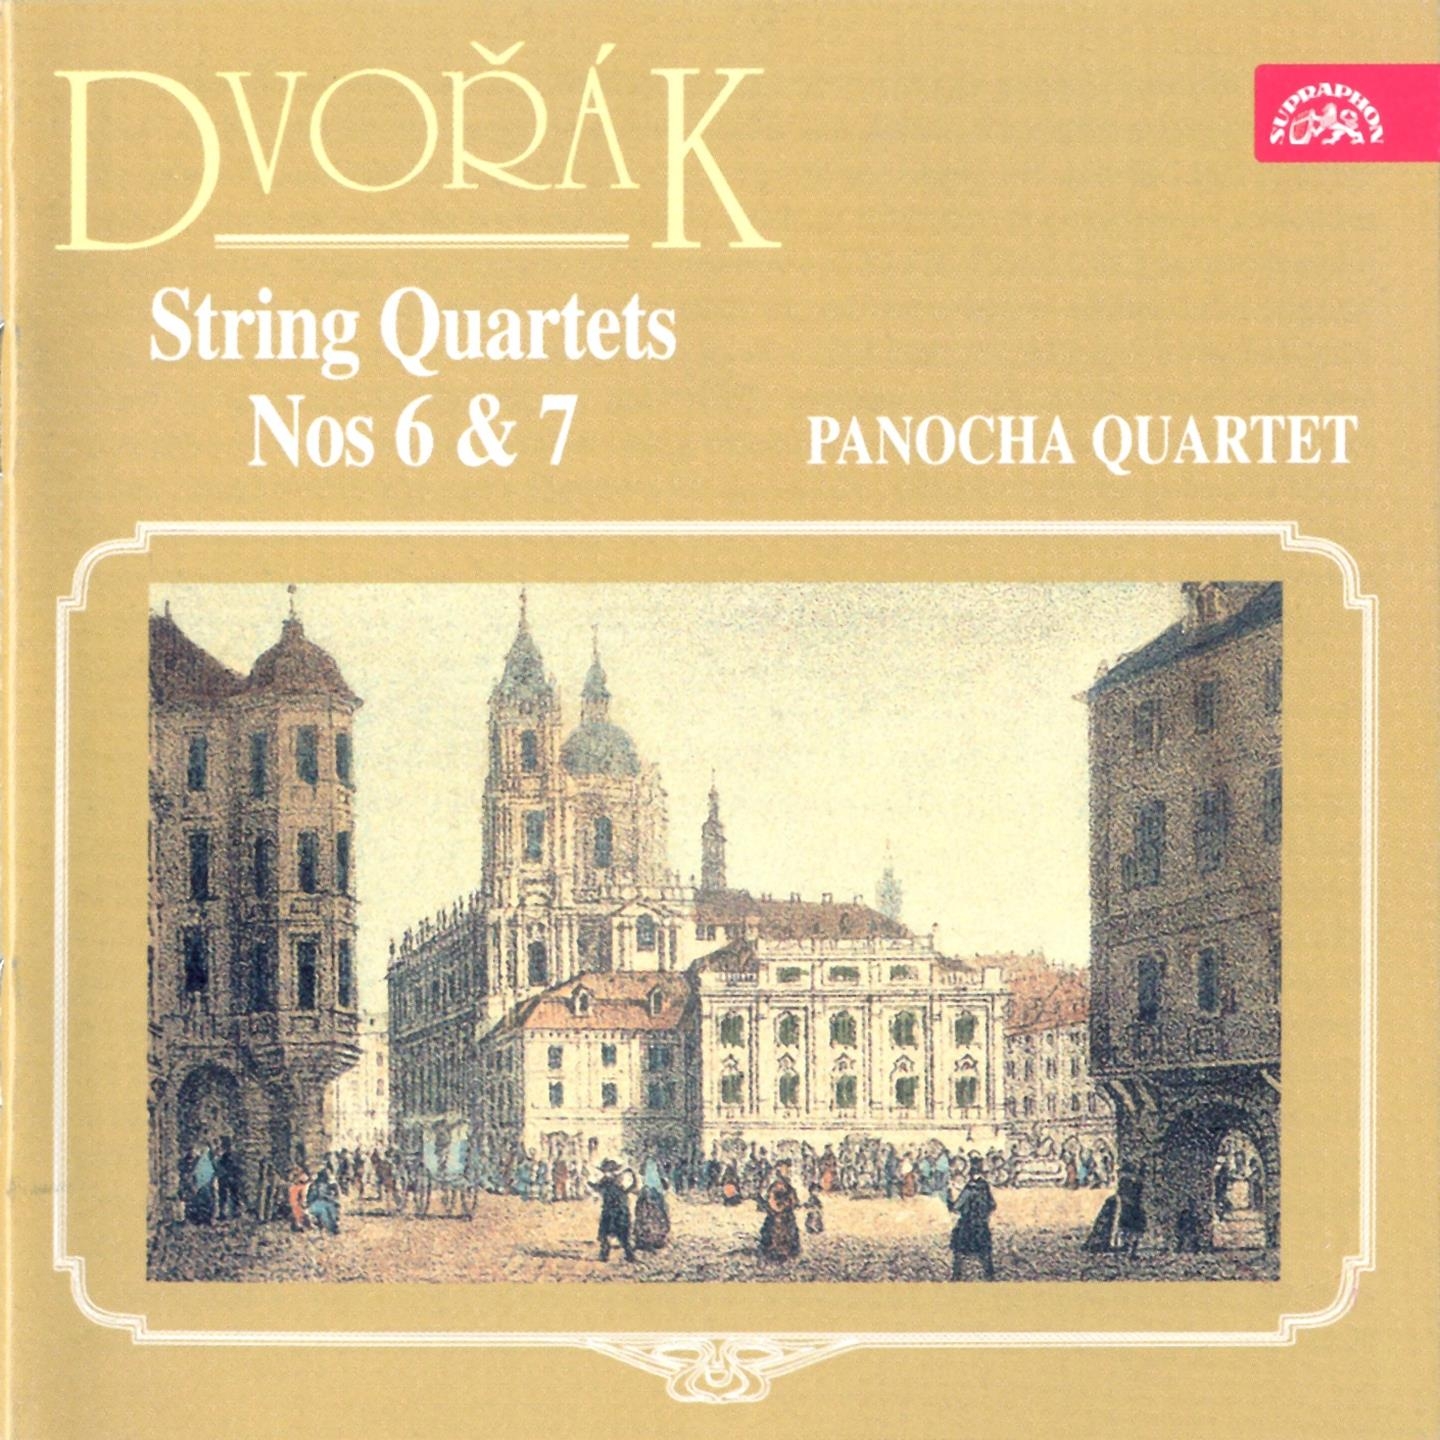 Andante appassionato for String Quartet in F Major, B. 40a